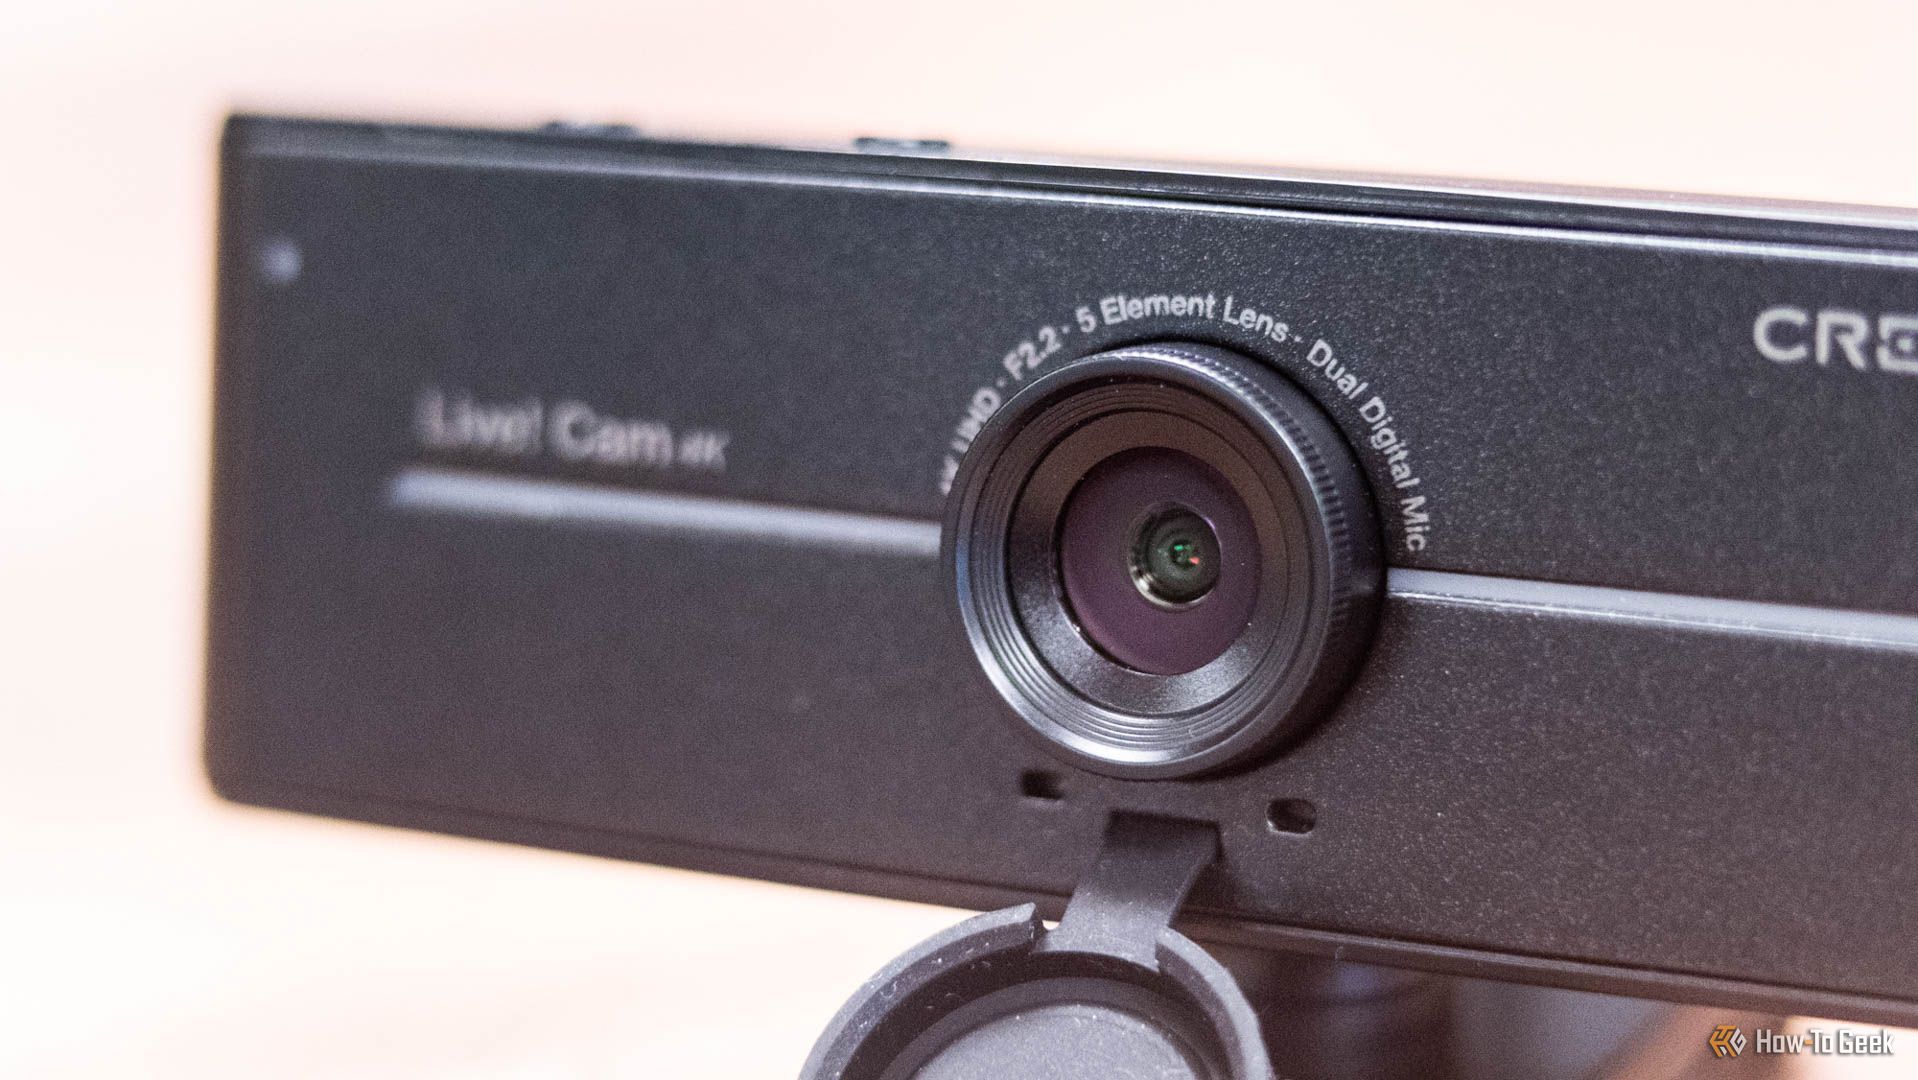 Creative Live! Cam Sync 4K Webcam Review: Entry-Level Webcam With a Few ...